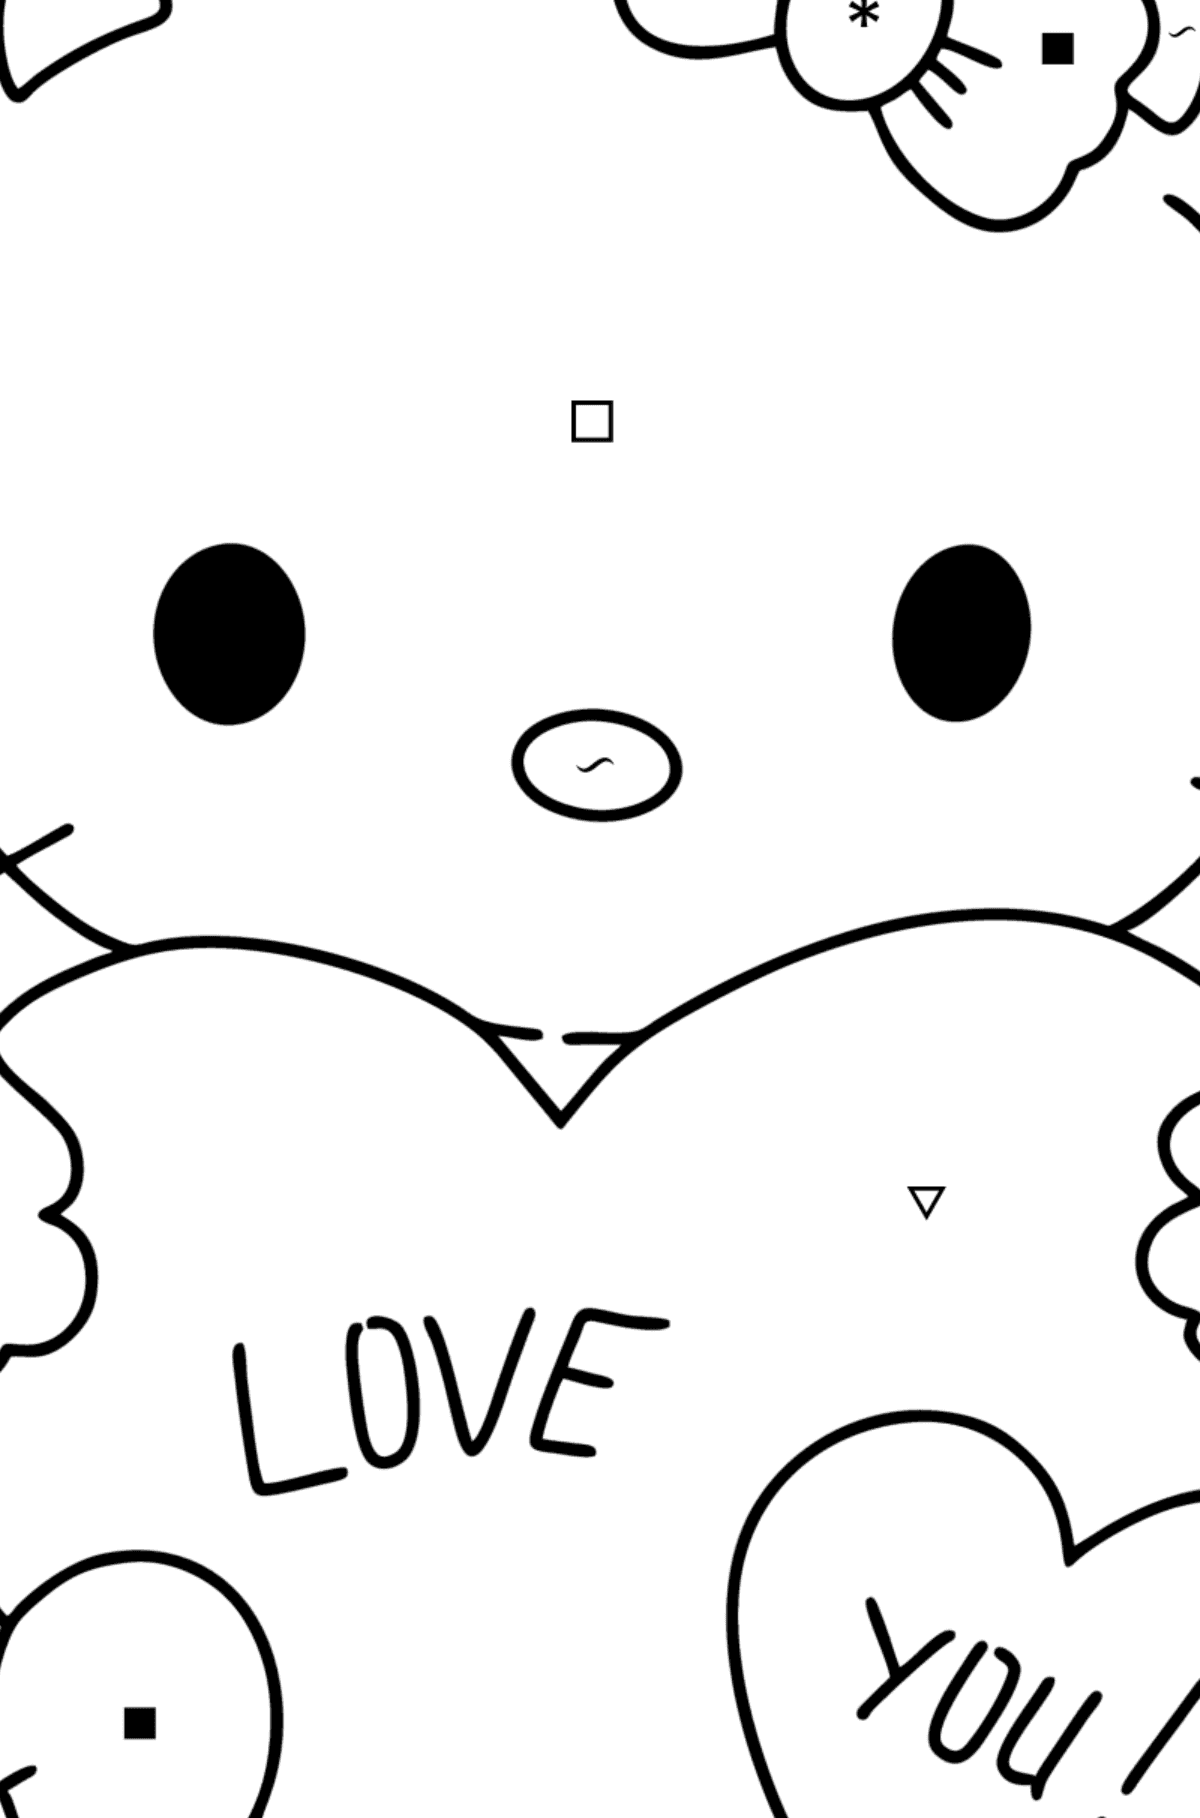 Boyama sayfası Hello Kitty ve kalpler - Sembollere ve Geometrik Şekillerle Boyama çocuklar için